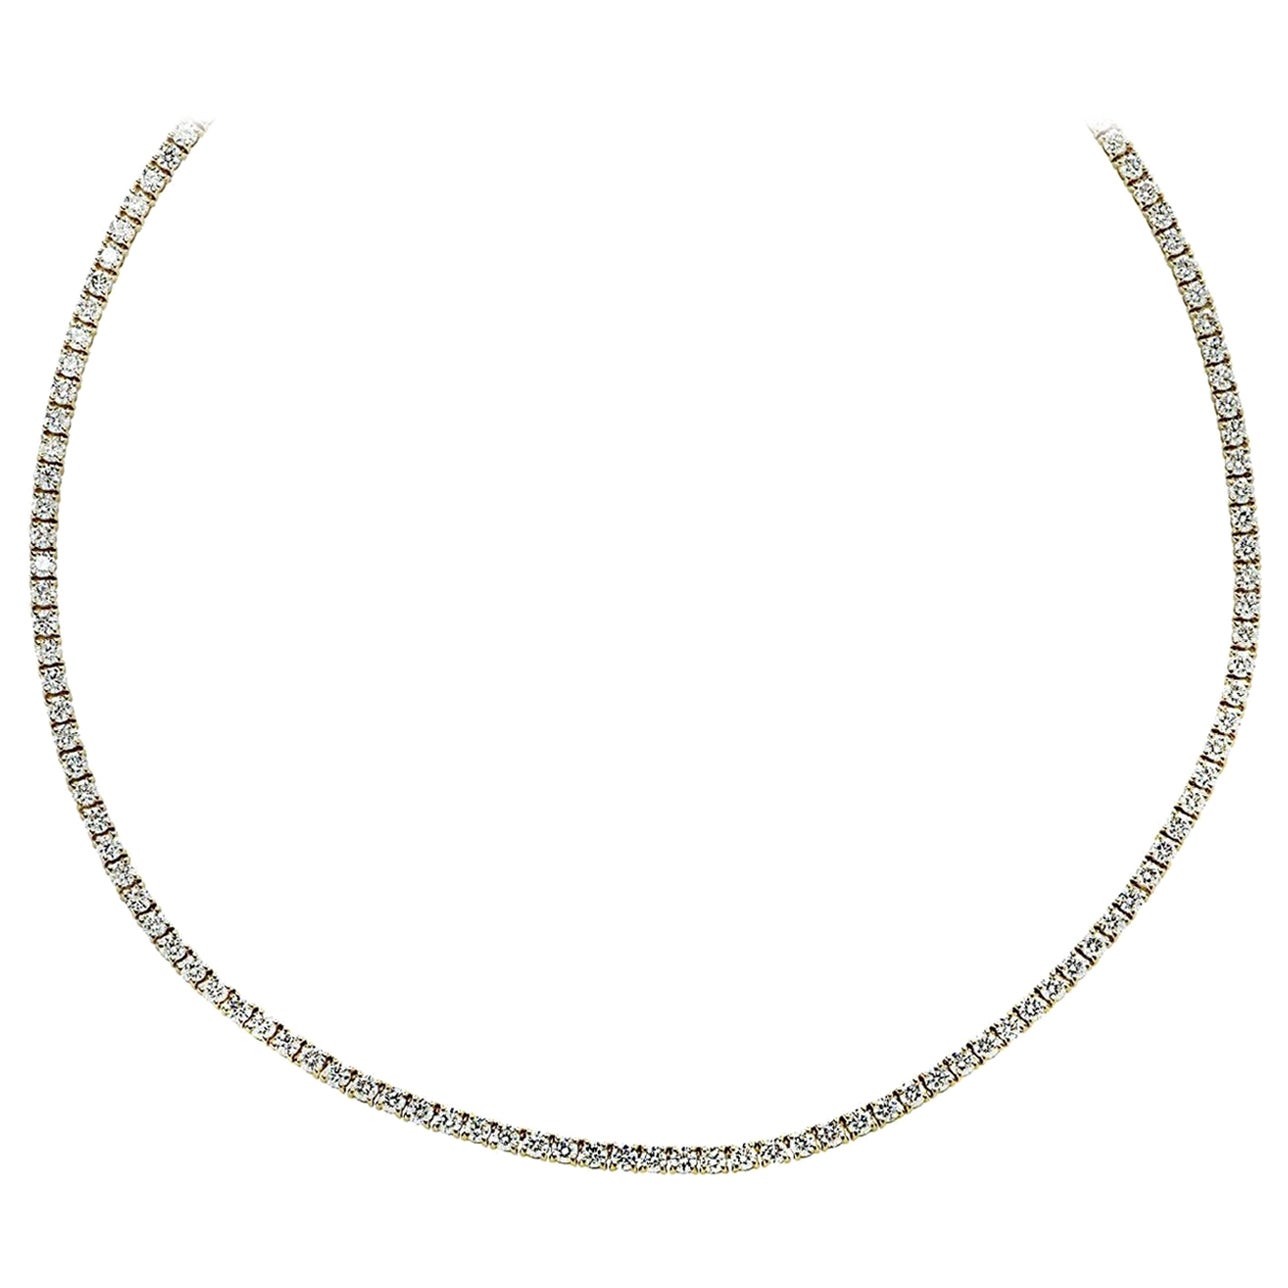 Vivid Diamonds 14.60 Carat Diamond Tennis Necklace For Sale